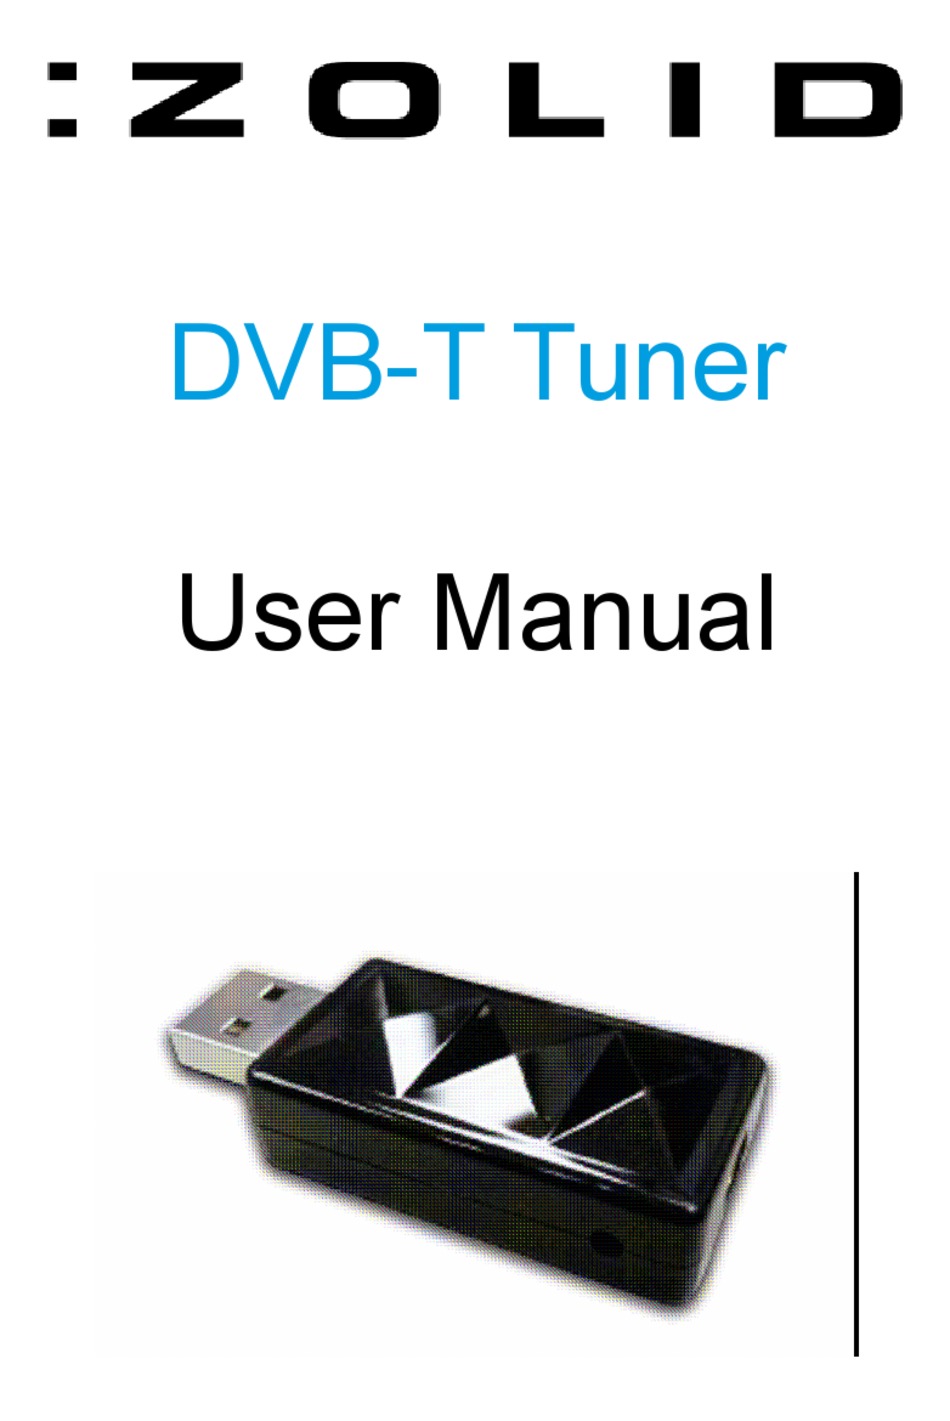 Virksomhedsbeskrivelse forkorte forbrydelse ZOLID DVB-T TUNER USER MANUAL Pdf Download | ManualsLib